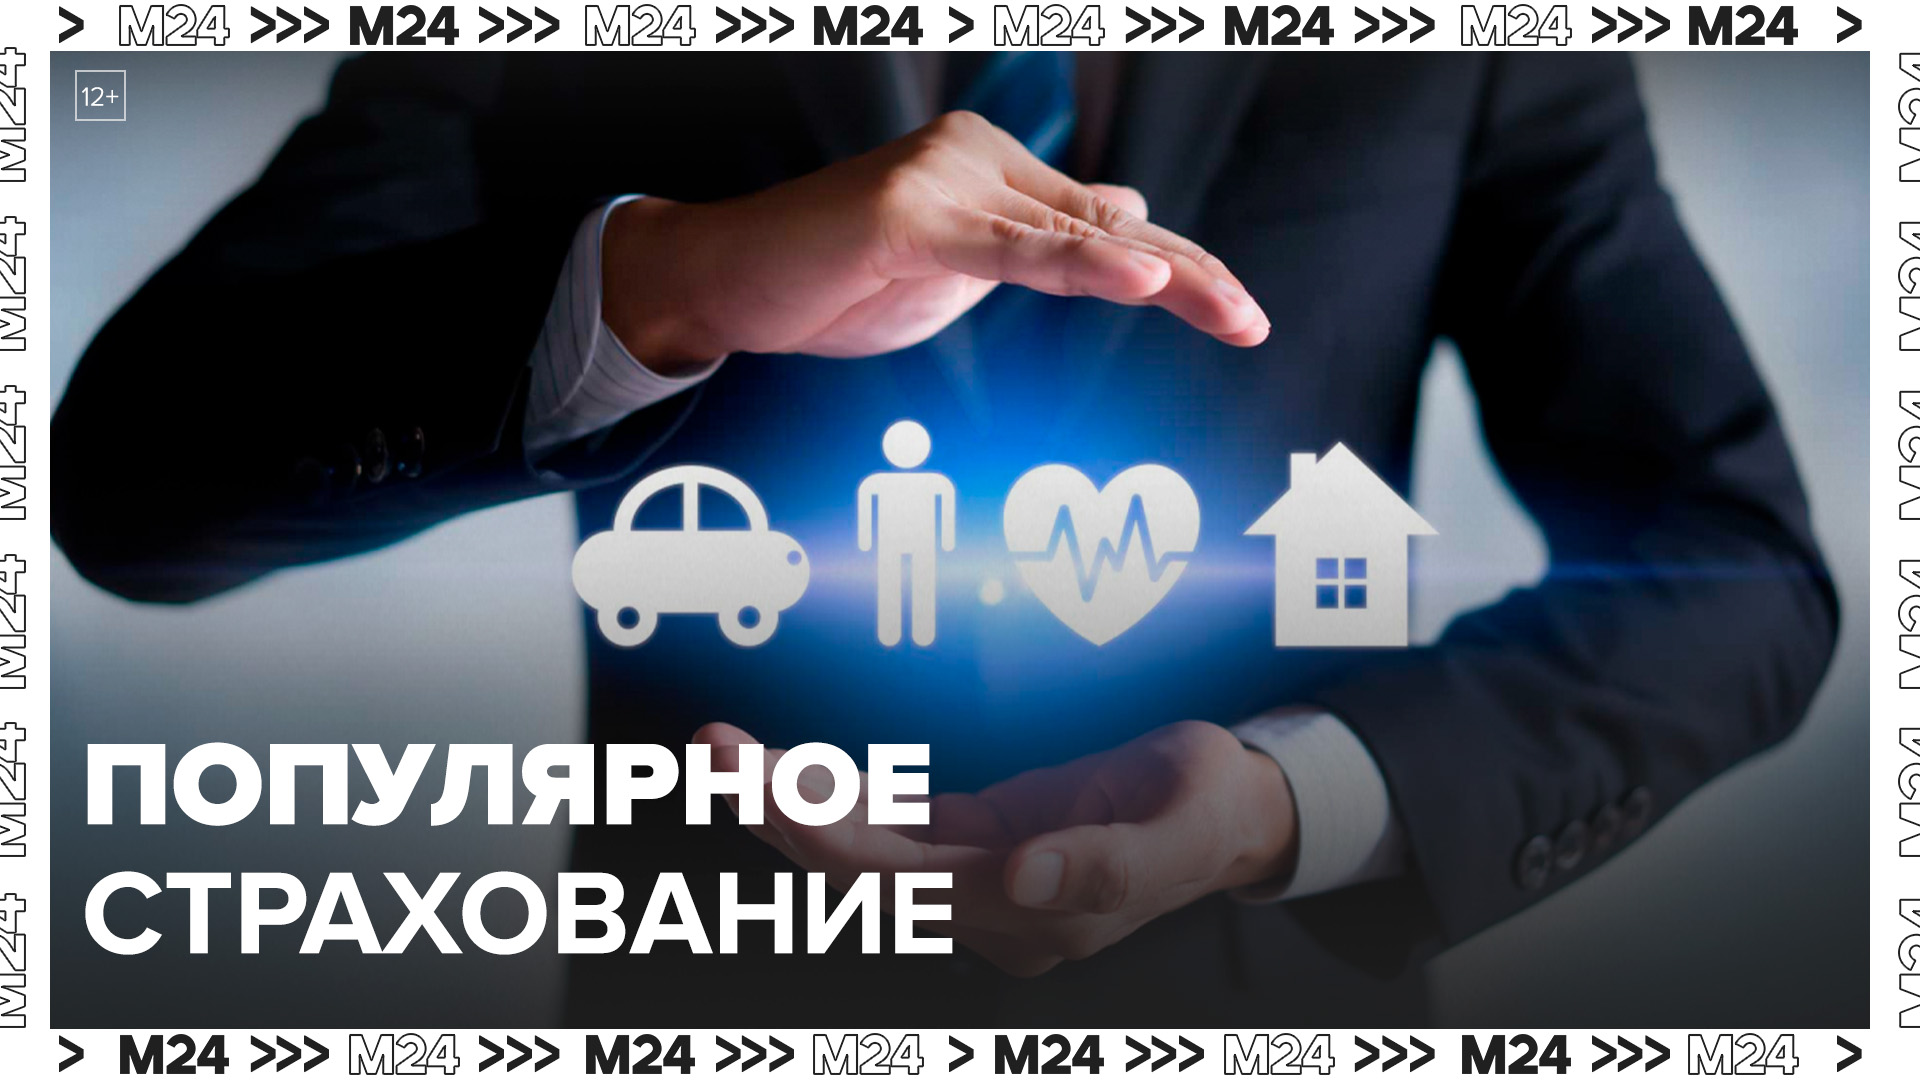 Эксперты рассказали о популярных видах страхования в весенне-летний период в Москве - Москва 24